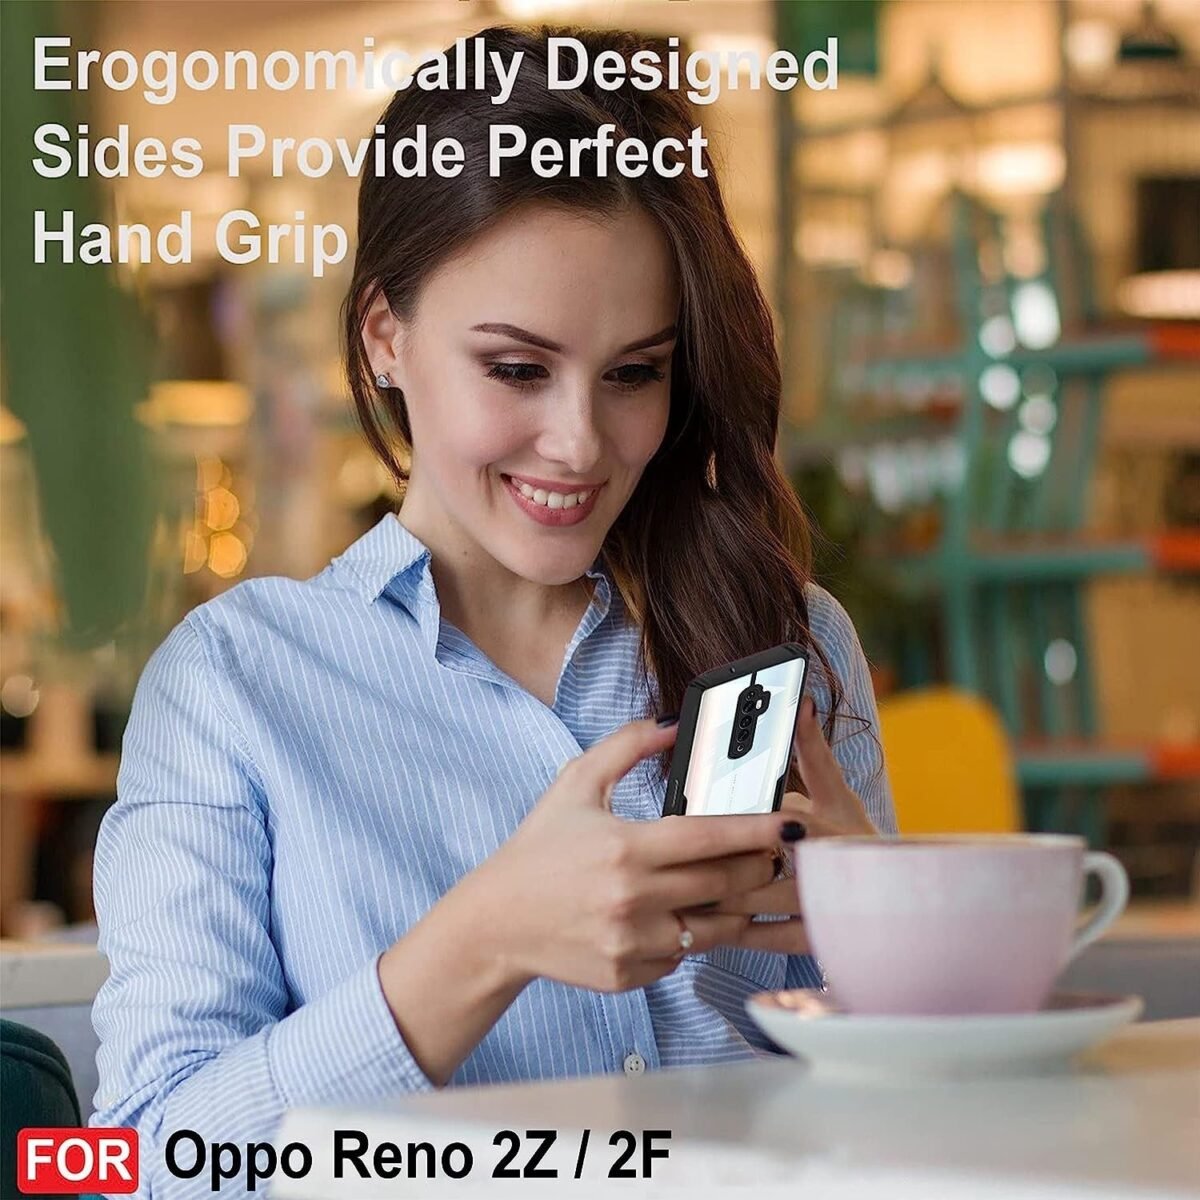 Back Case Cover for Oppo Reno 2Z / Oppo Reno 2F | Compatible for Oppo Reno 2Z / Oppo Reno 2F Back Case Cover | Clear